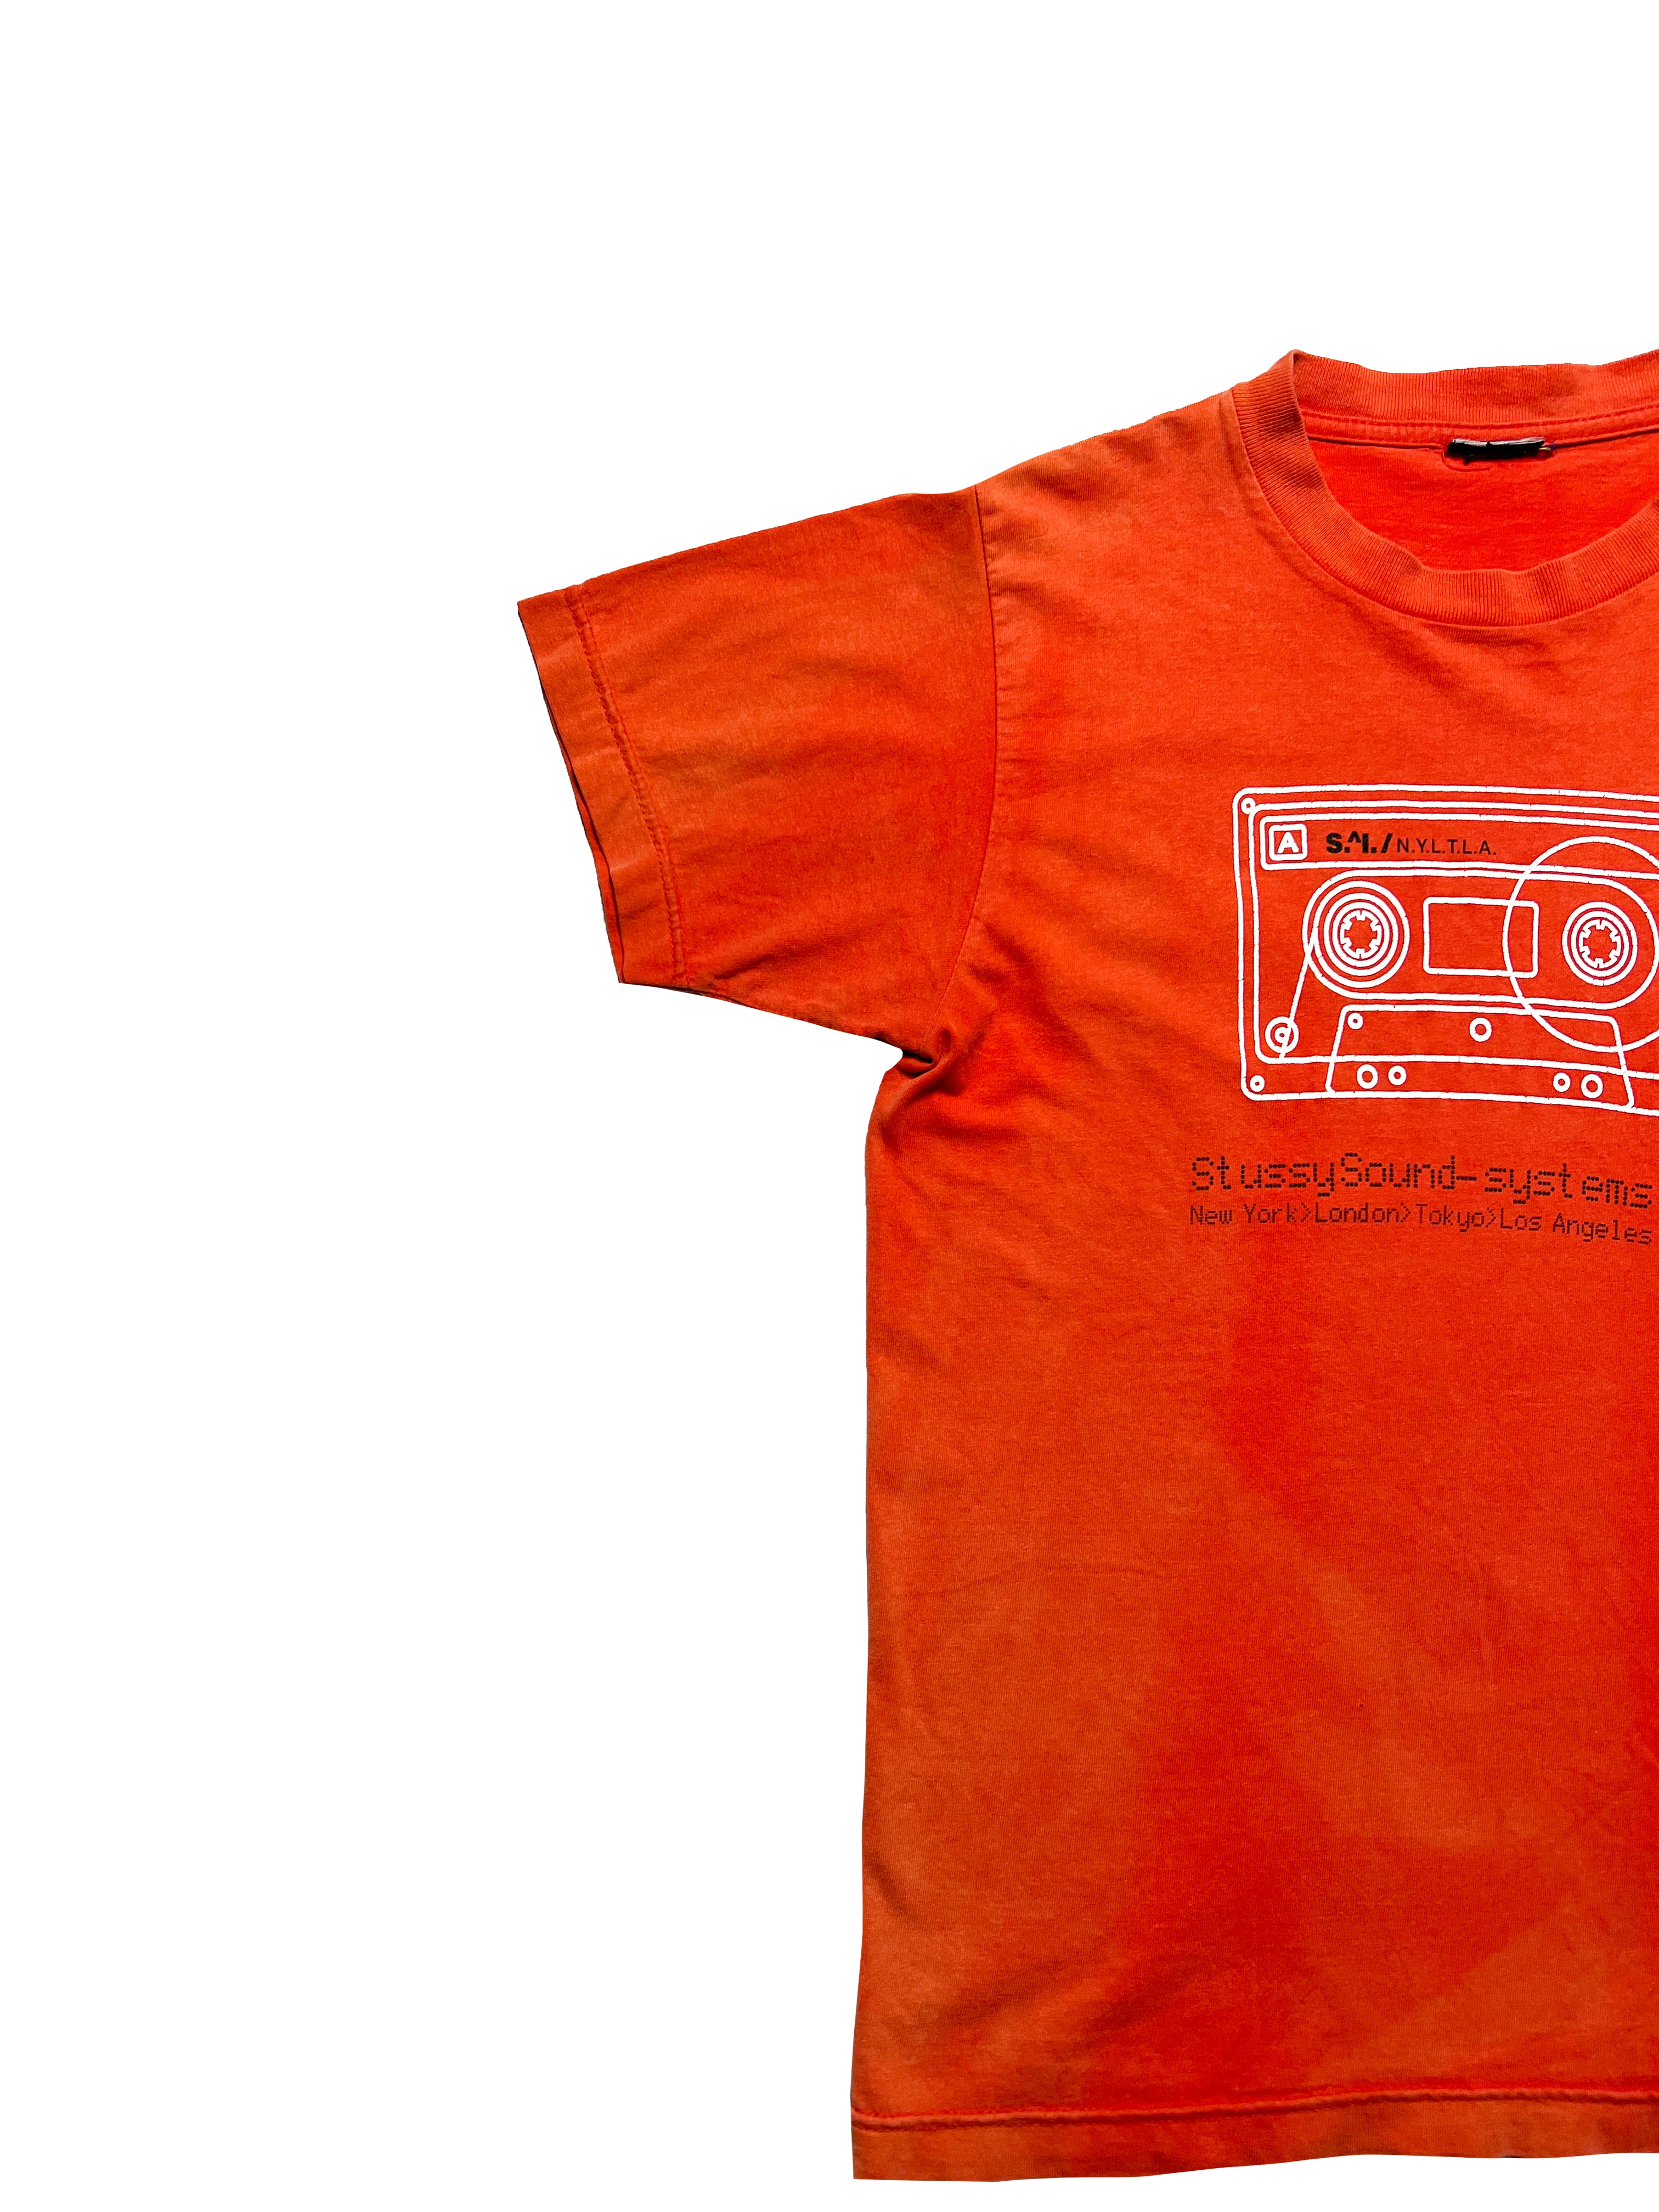 Stussy Sound System Orange T-shirt 90's